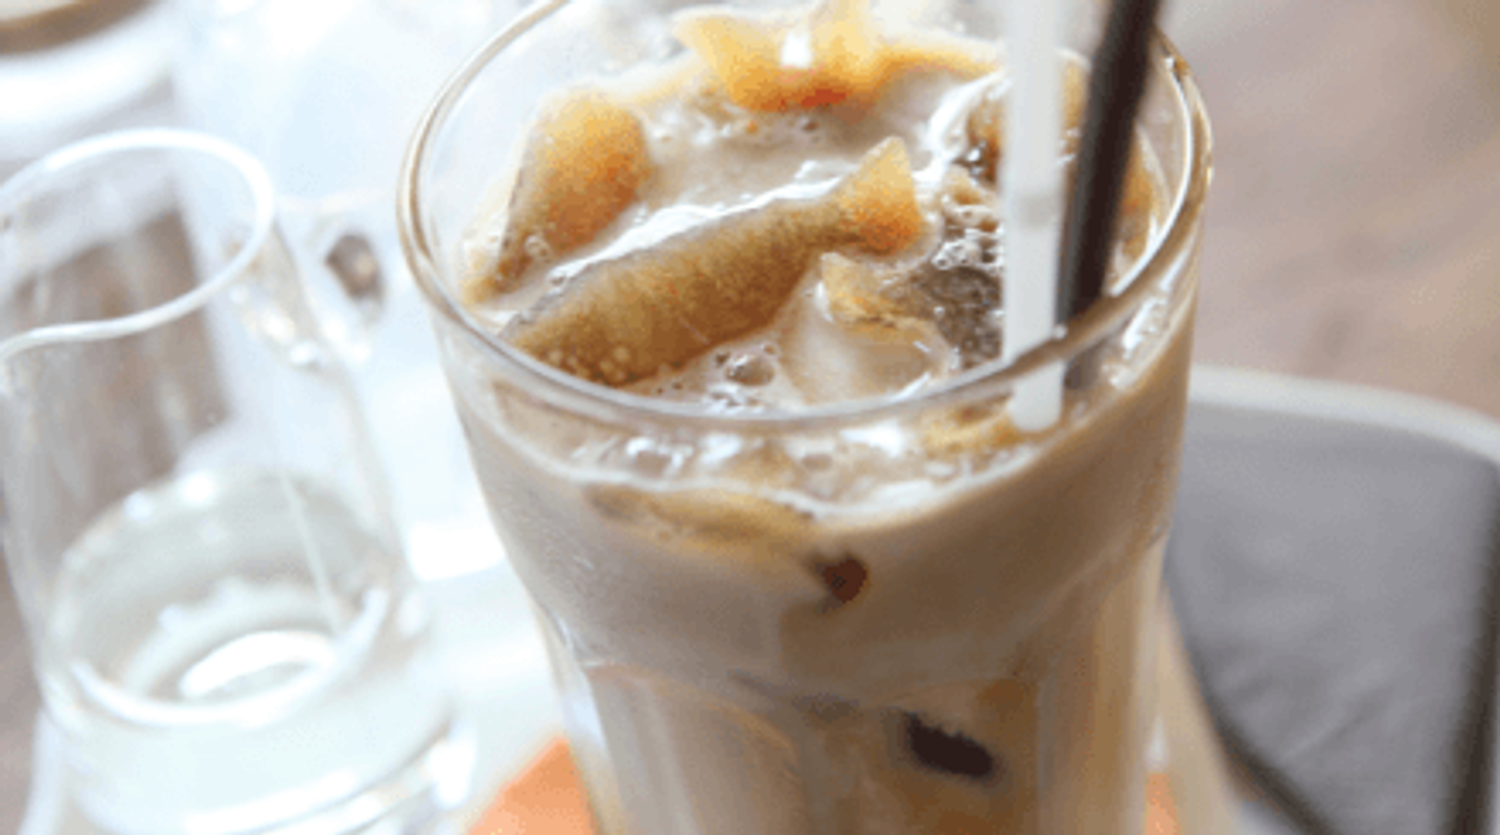 Iced Javy Vanilla latte